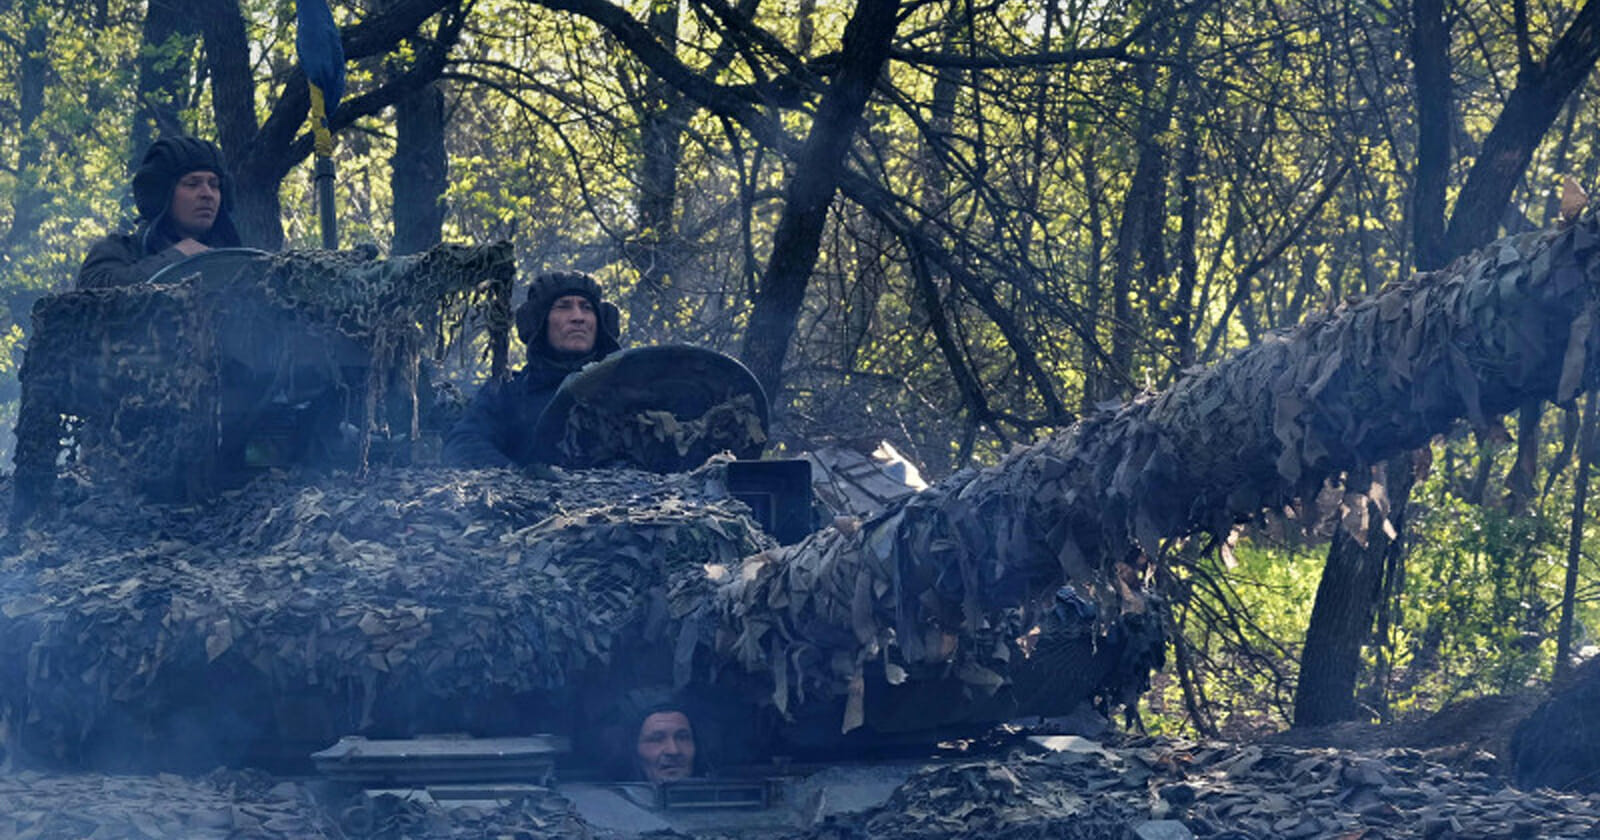 فرار فرقة روسية للنجاة بحياتها مع اقتحام الدبابات الأوكرانية watanserb.com